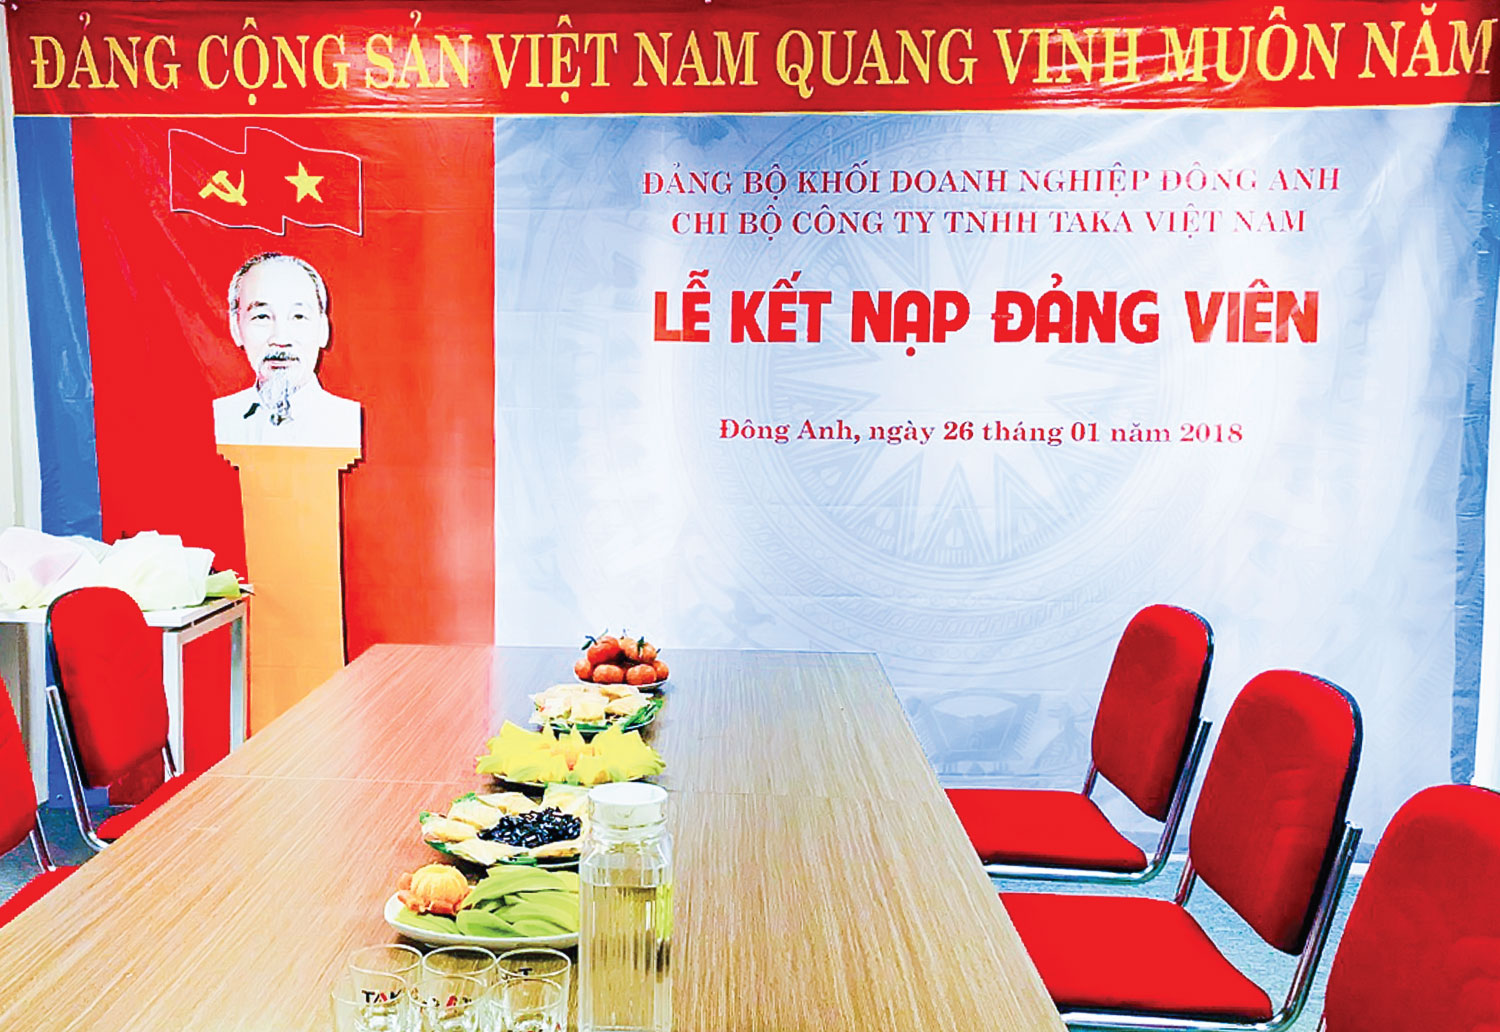 Lễ kết nạp Đảng viên chi bộ Công ty TNHH Taka Việt Nam